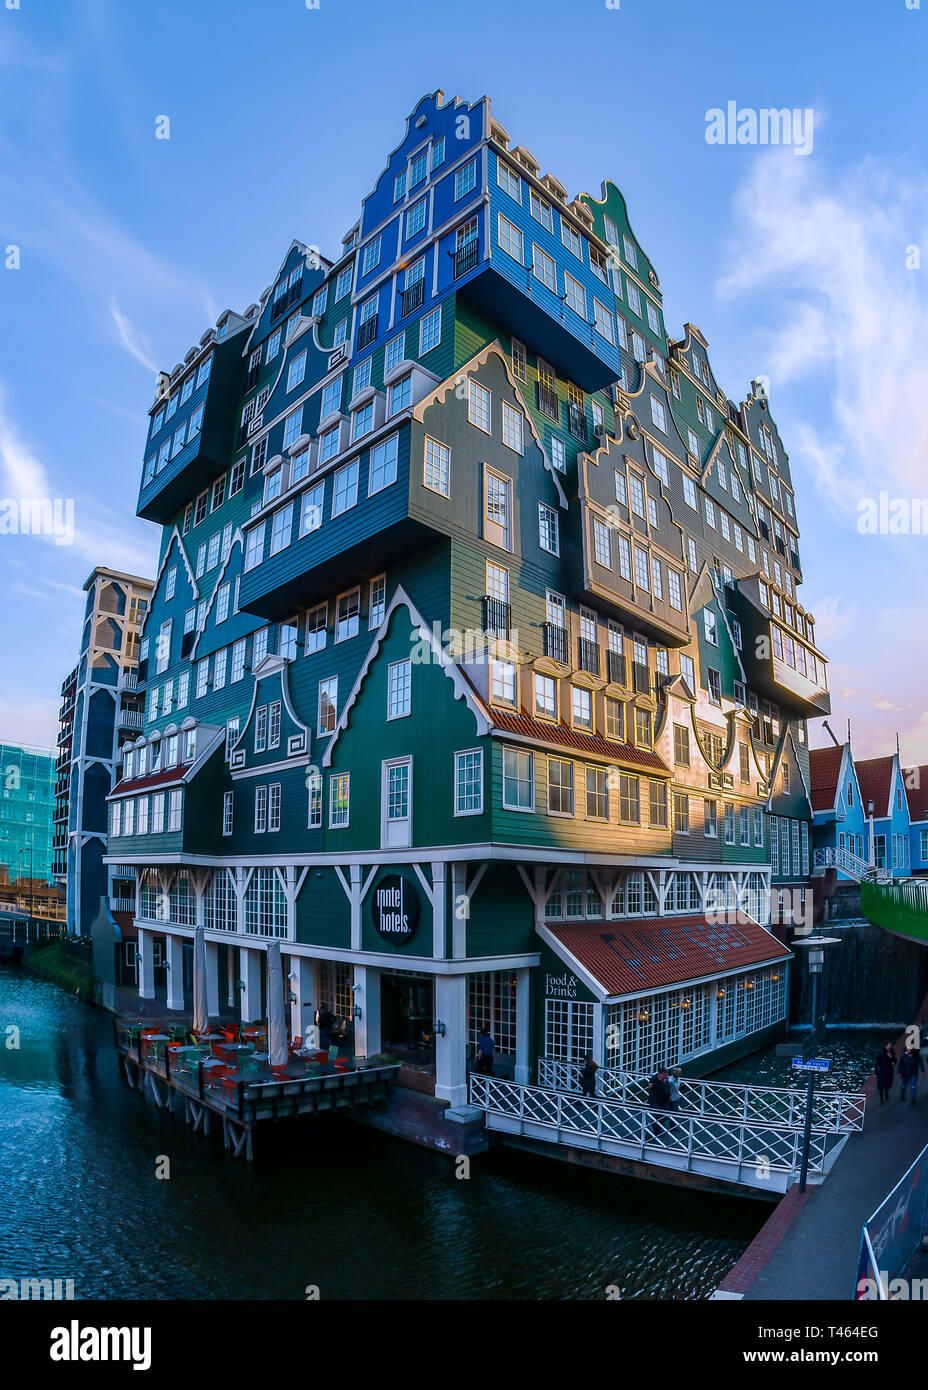 La façade de l'hôtel Inntel à Zaandam, près d'Amsterdam, est composé de différentes maisons colorées de style hollandais. Banque D'Images